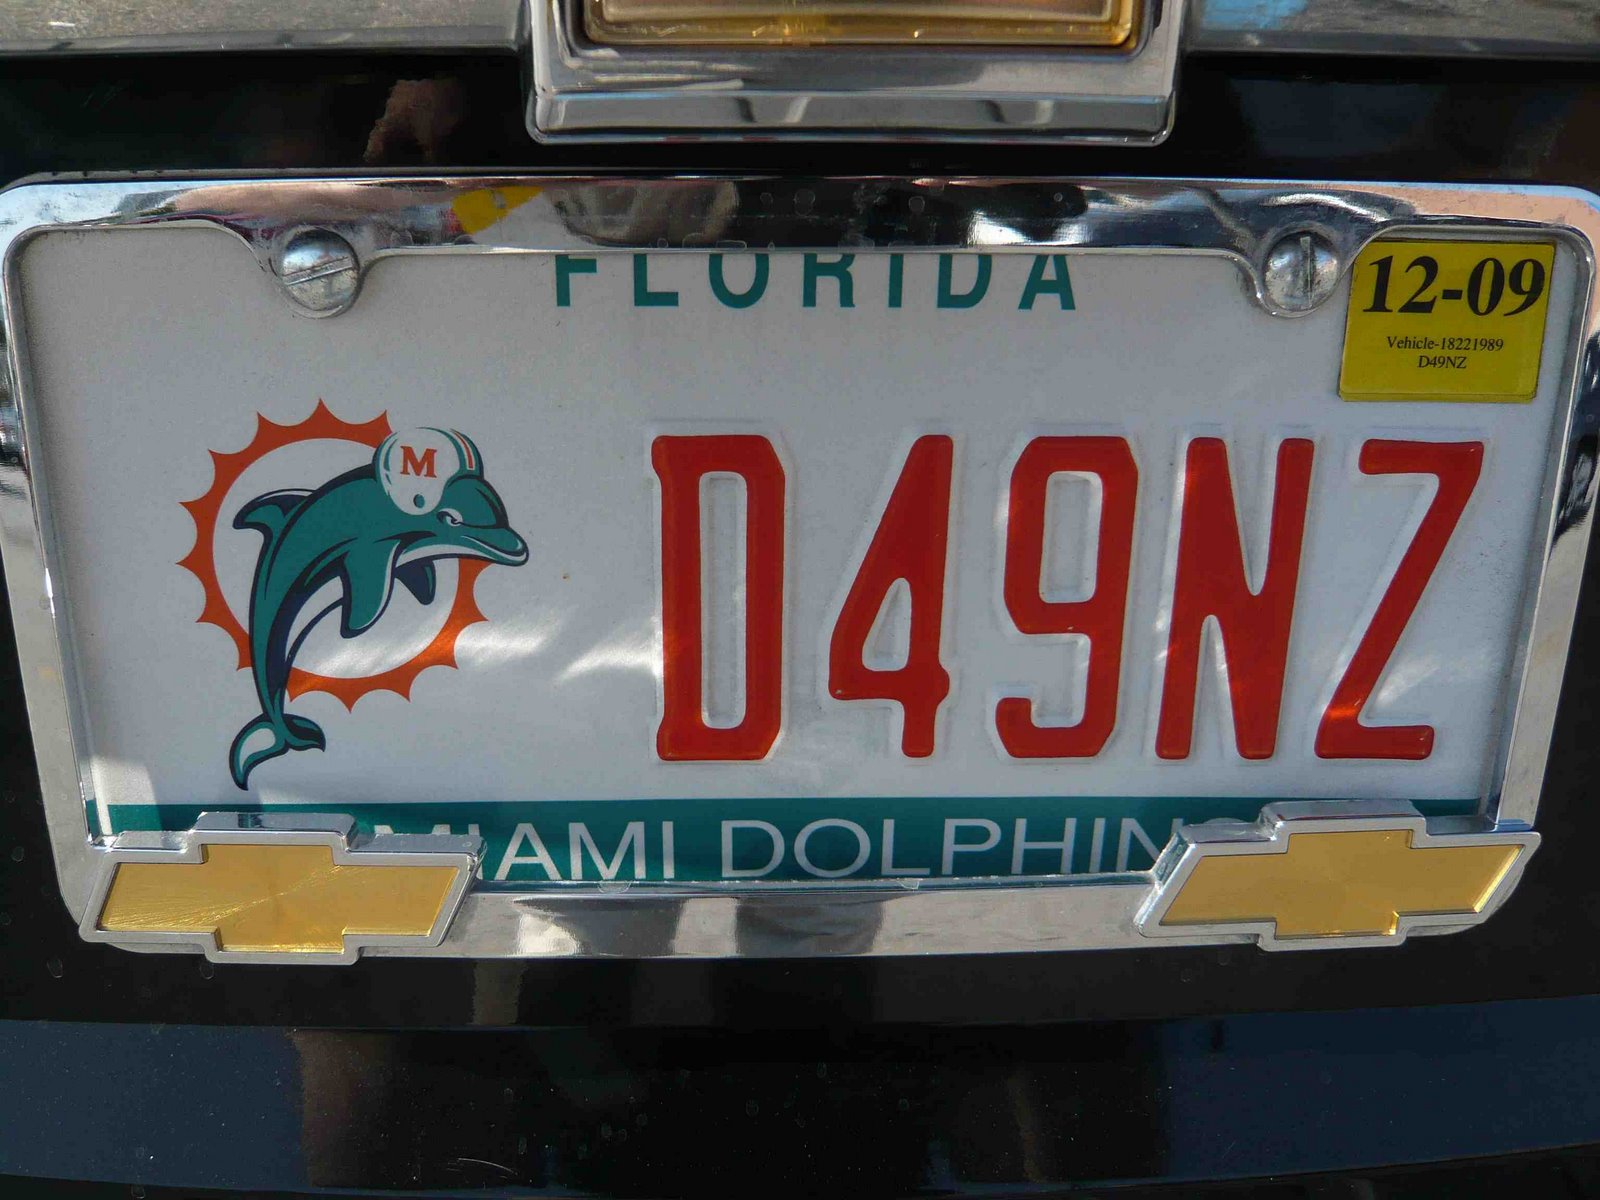 [Florida+miami+dolphins.jpg]